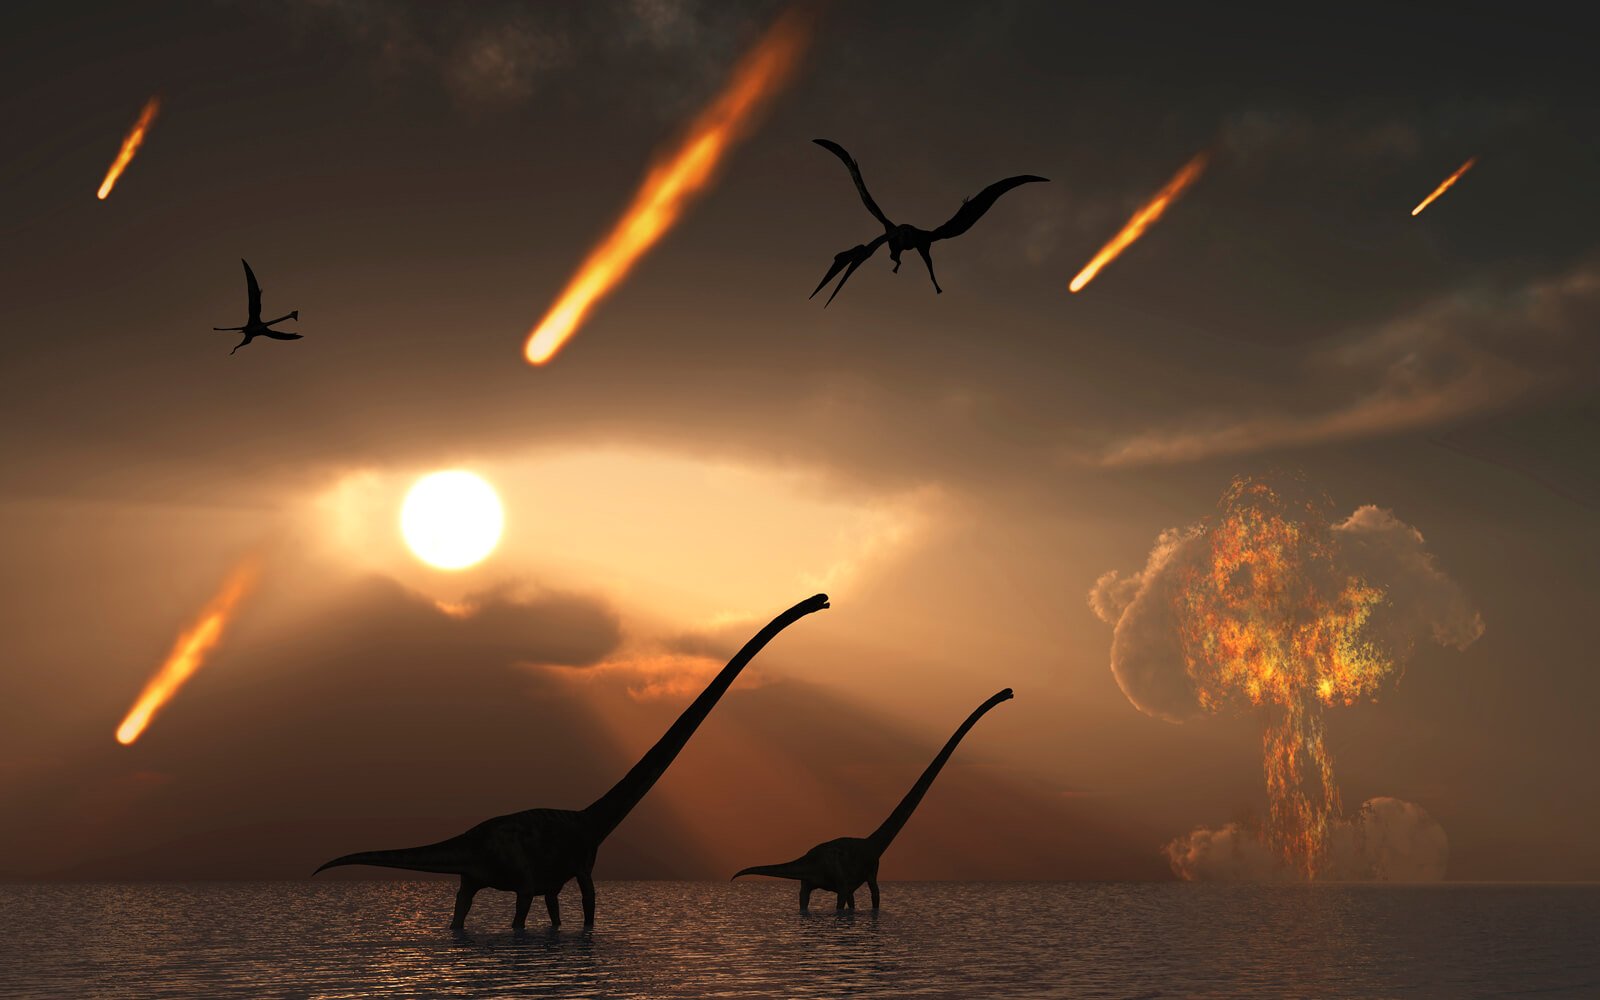 Доклад по теме Как гнездились динозавры